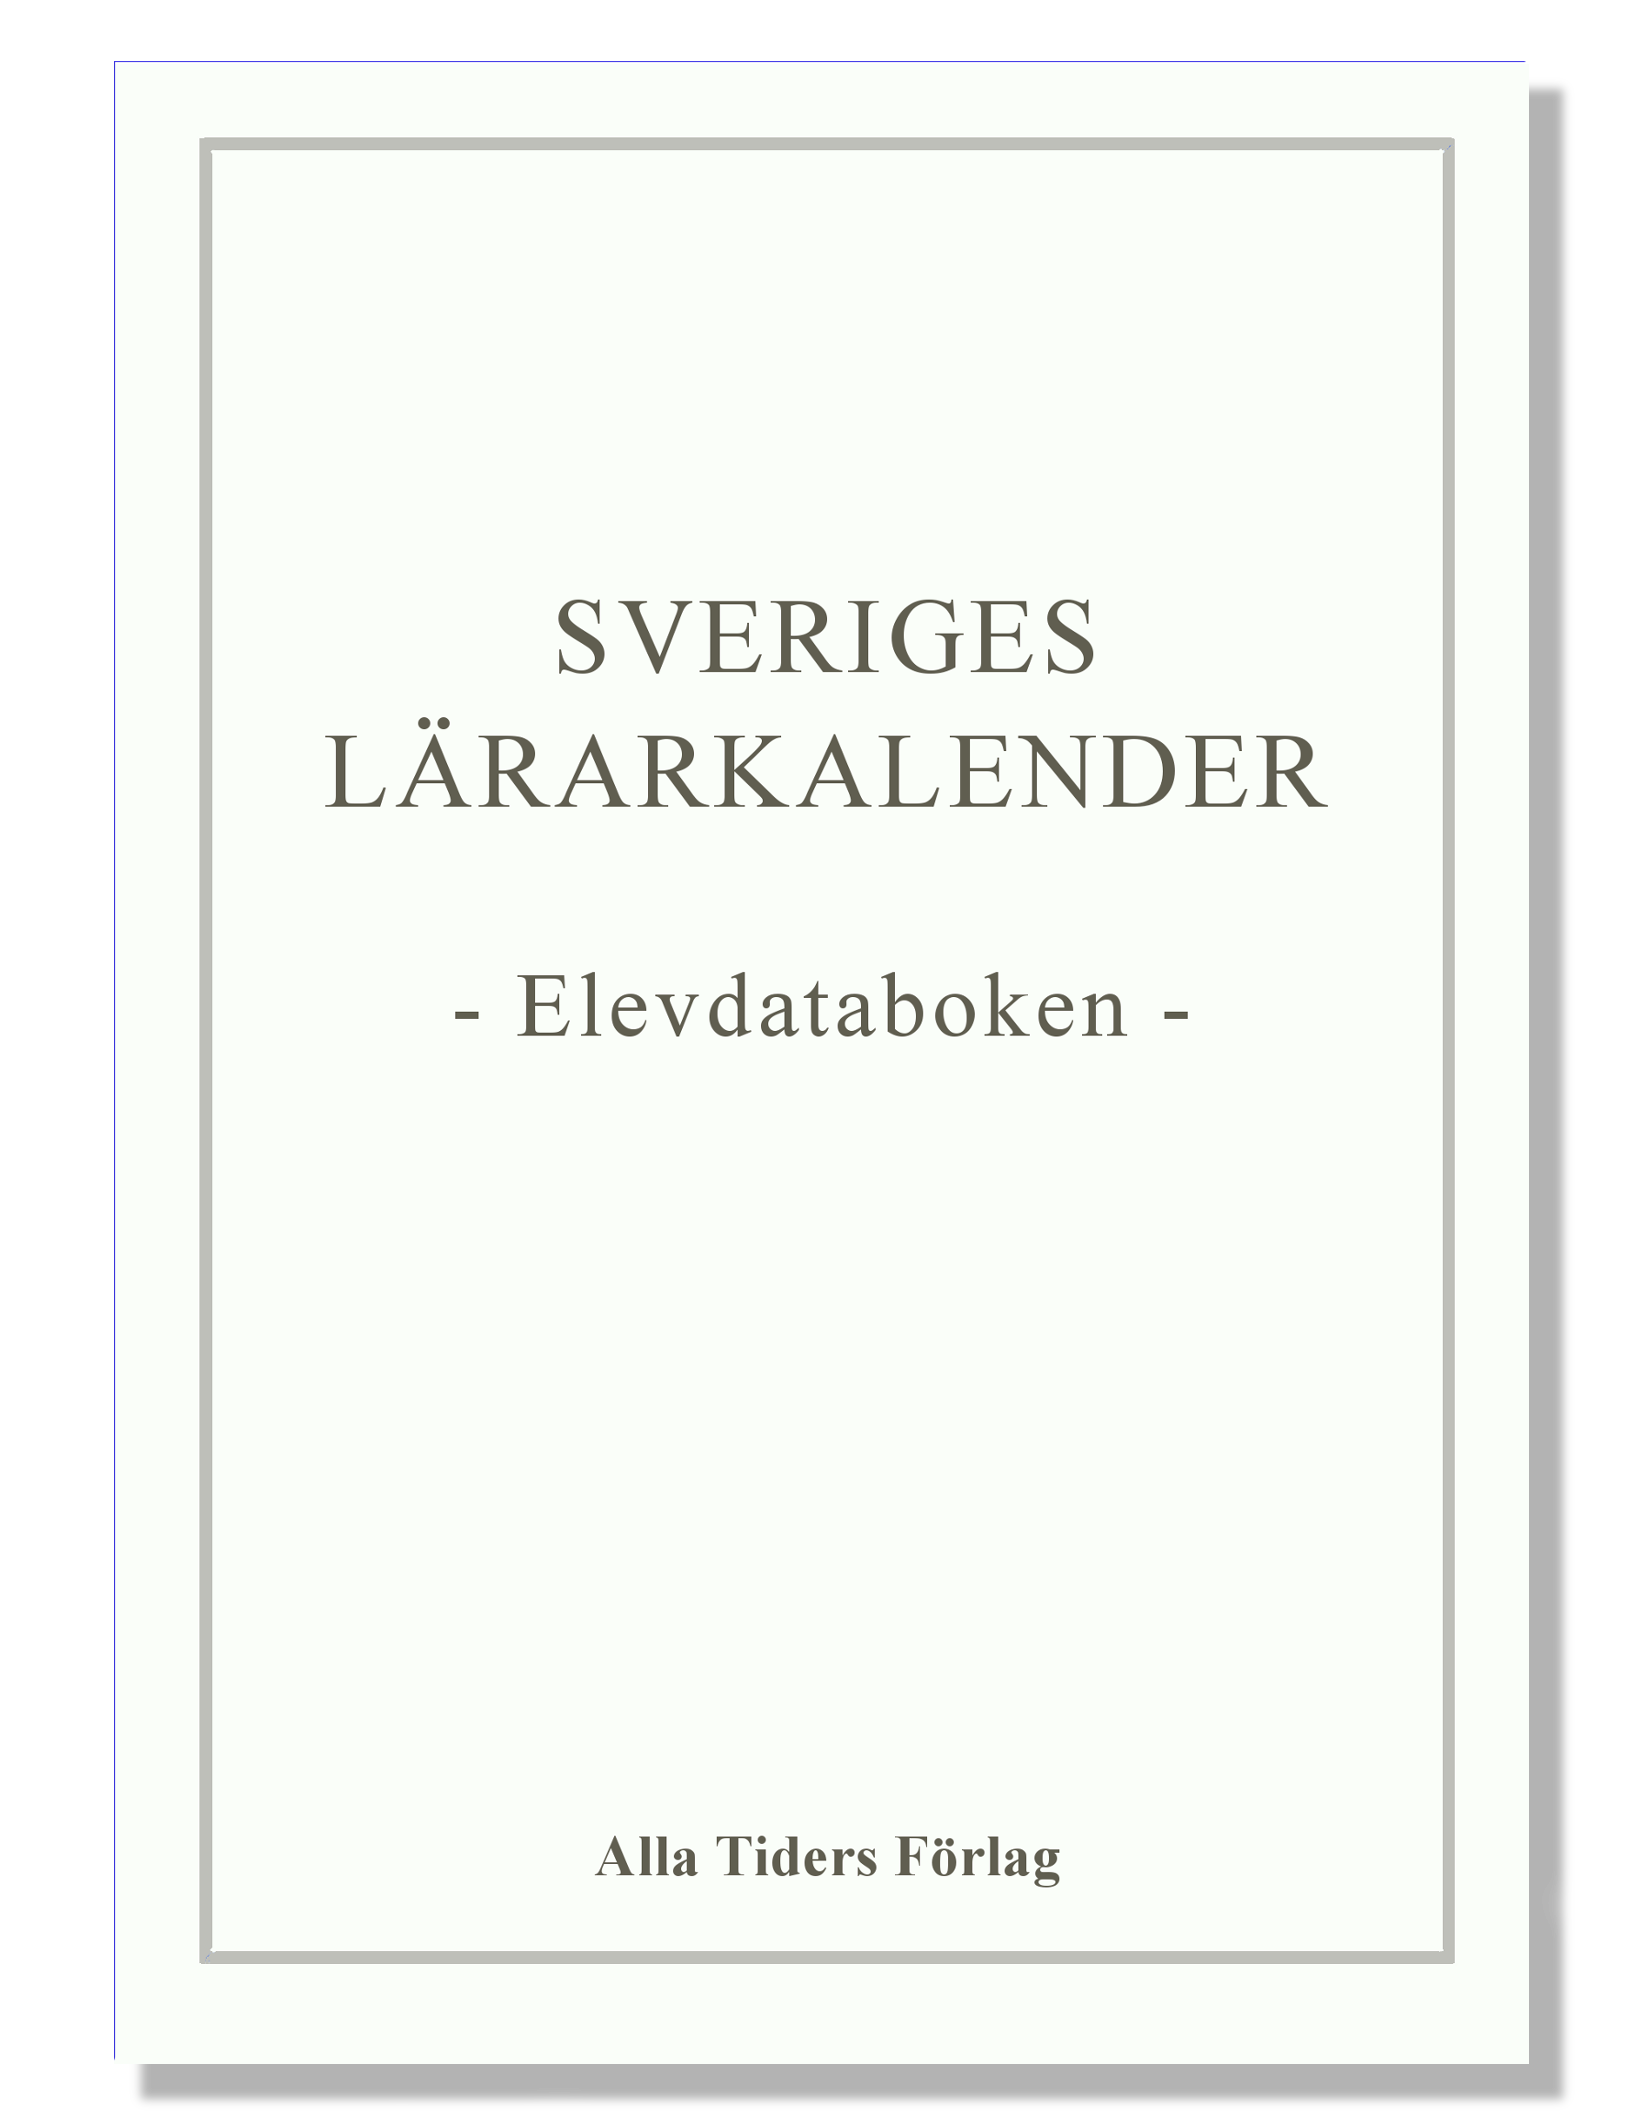 Sveriges Lärarkalender - Elevdataboken